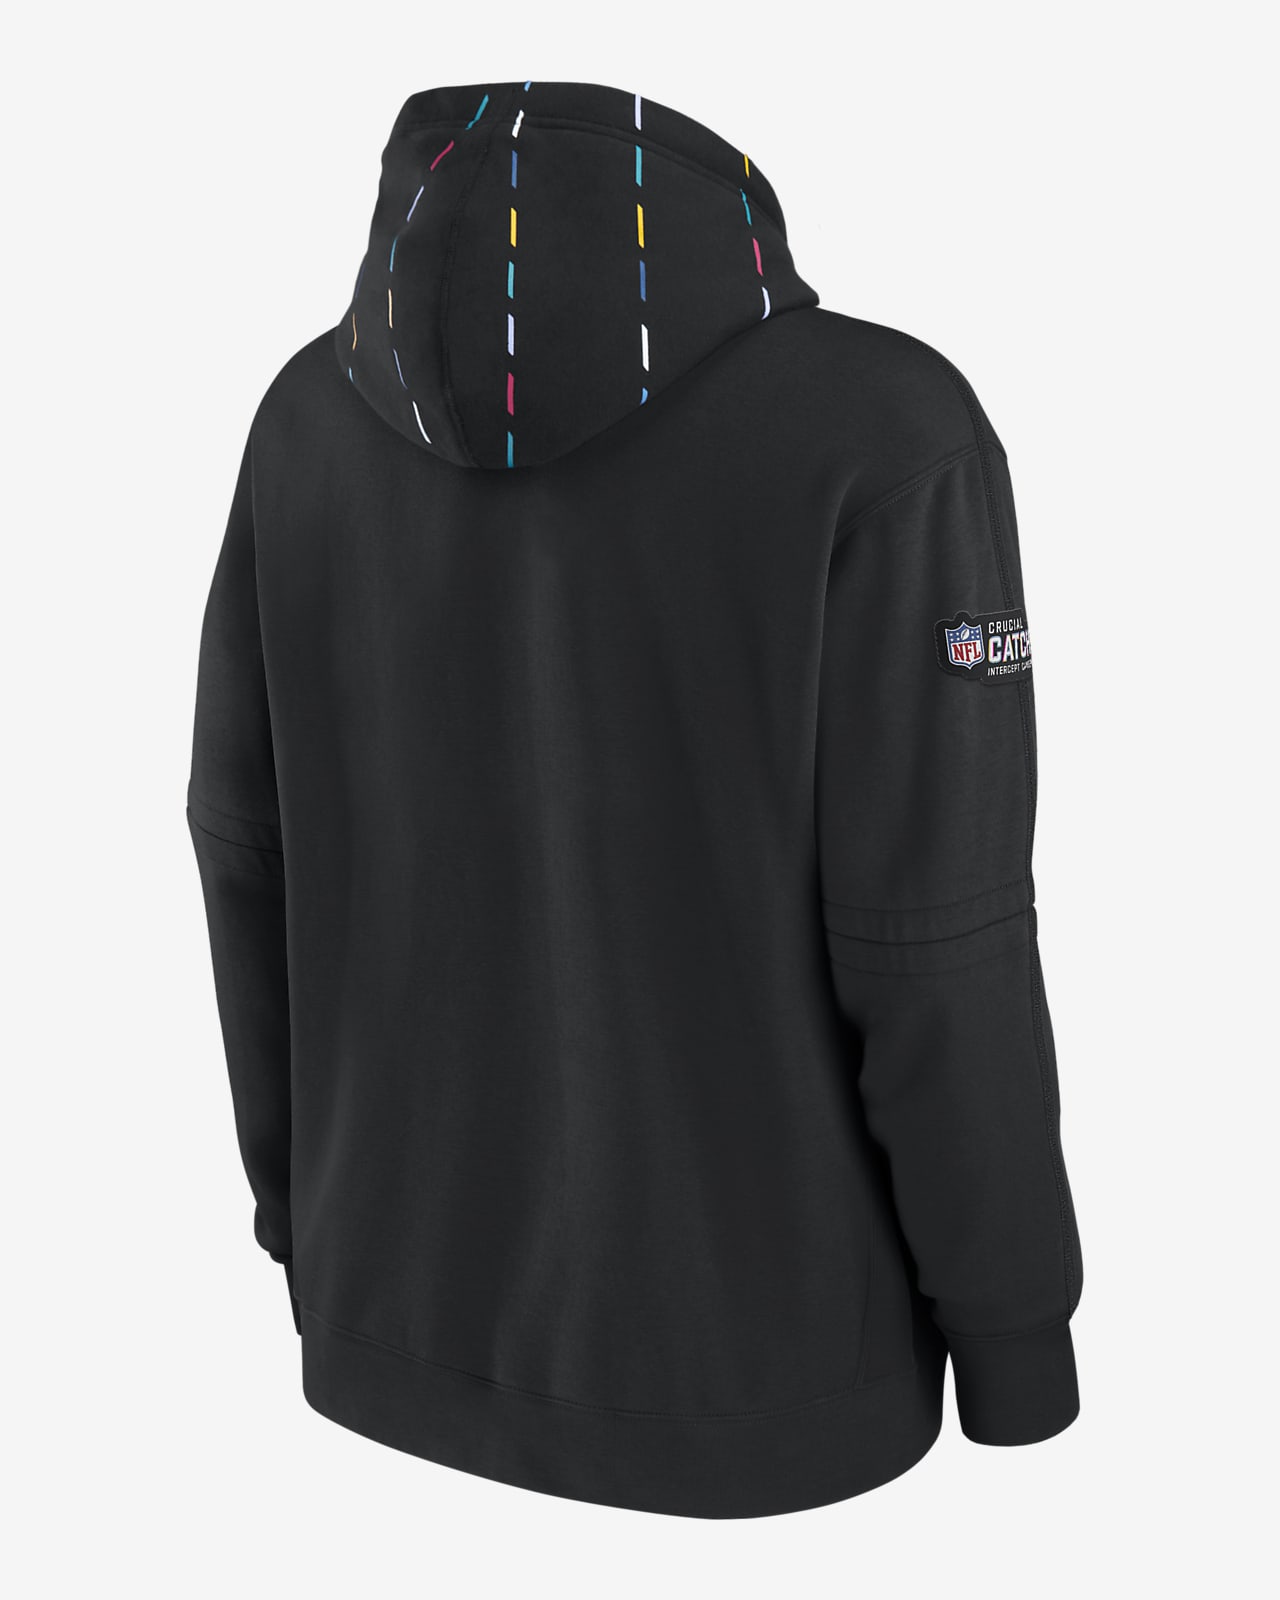 NFL Men's Sweatshirt - Black - XL